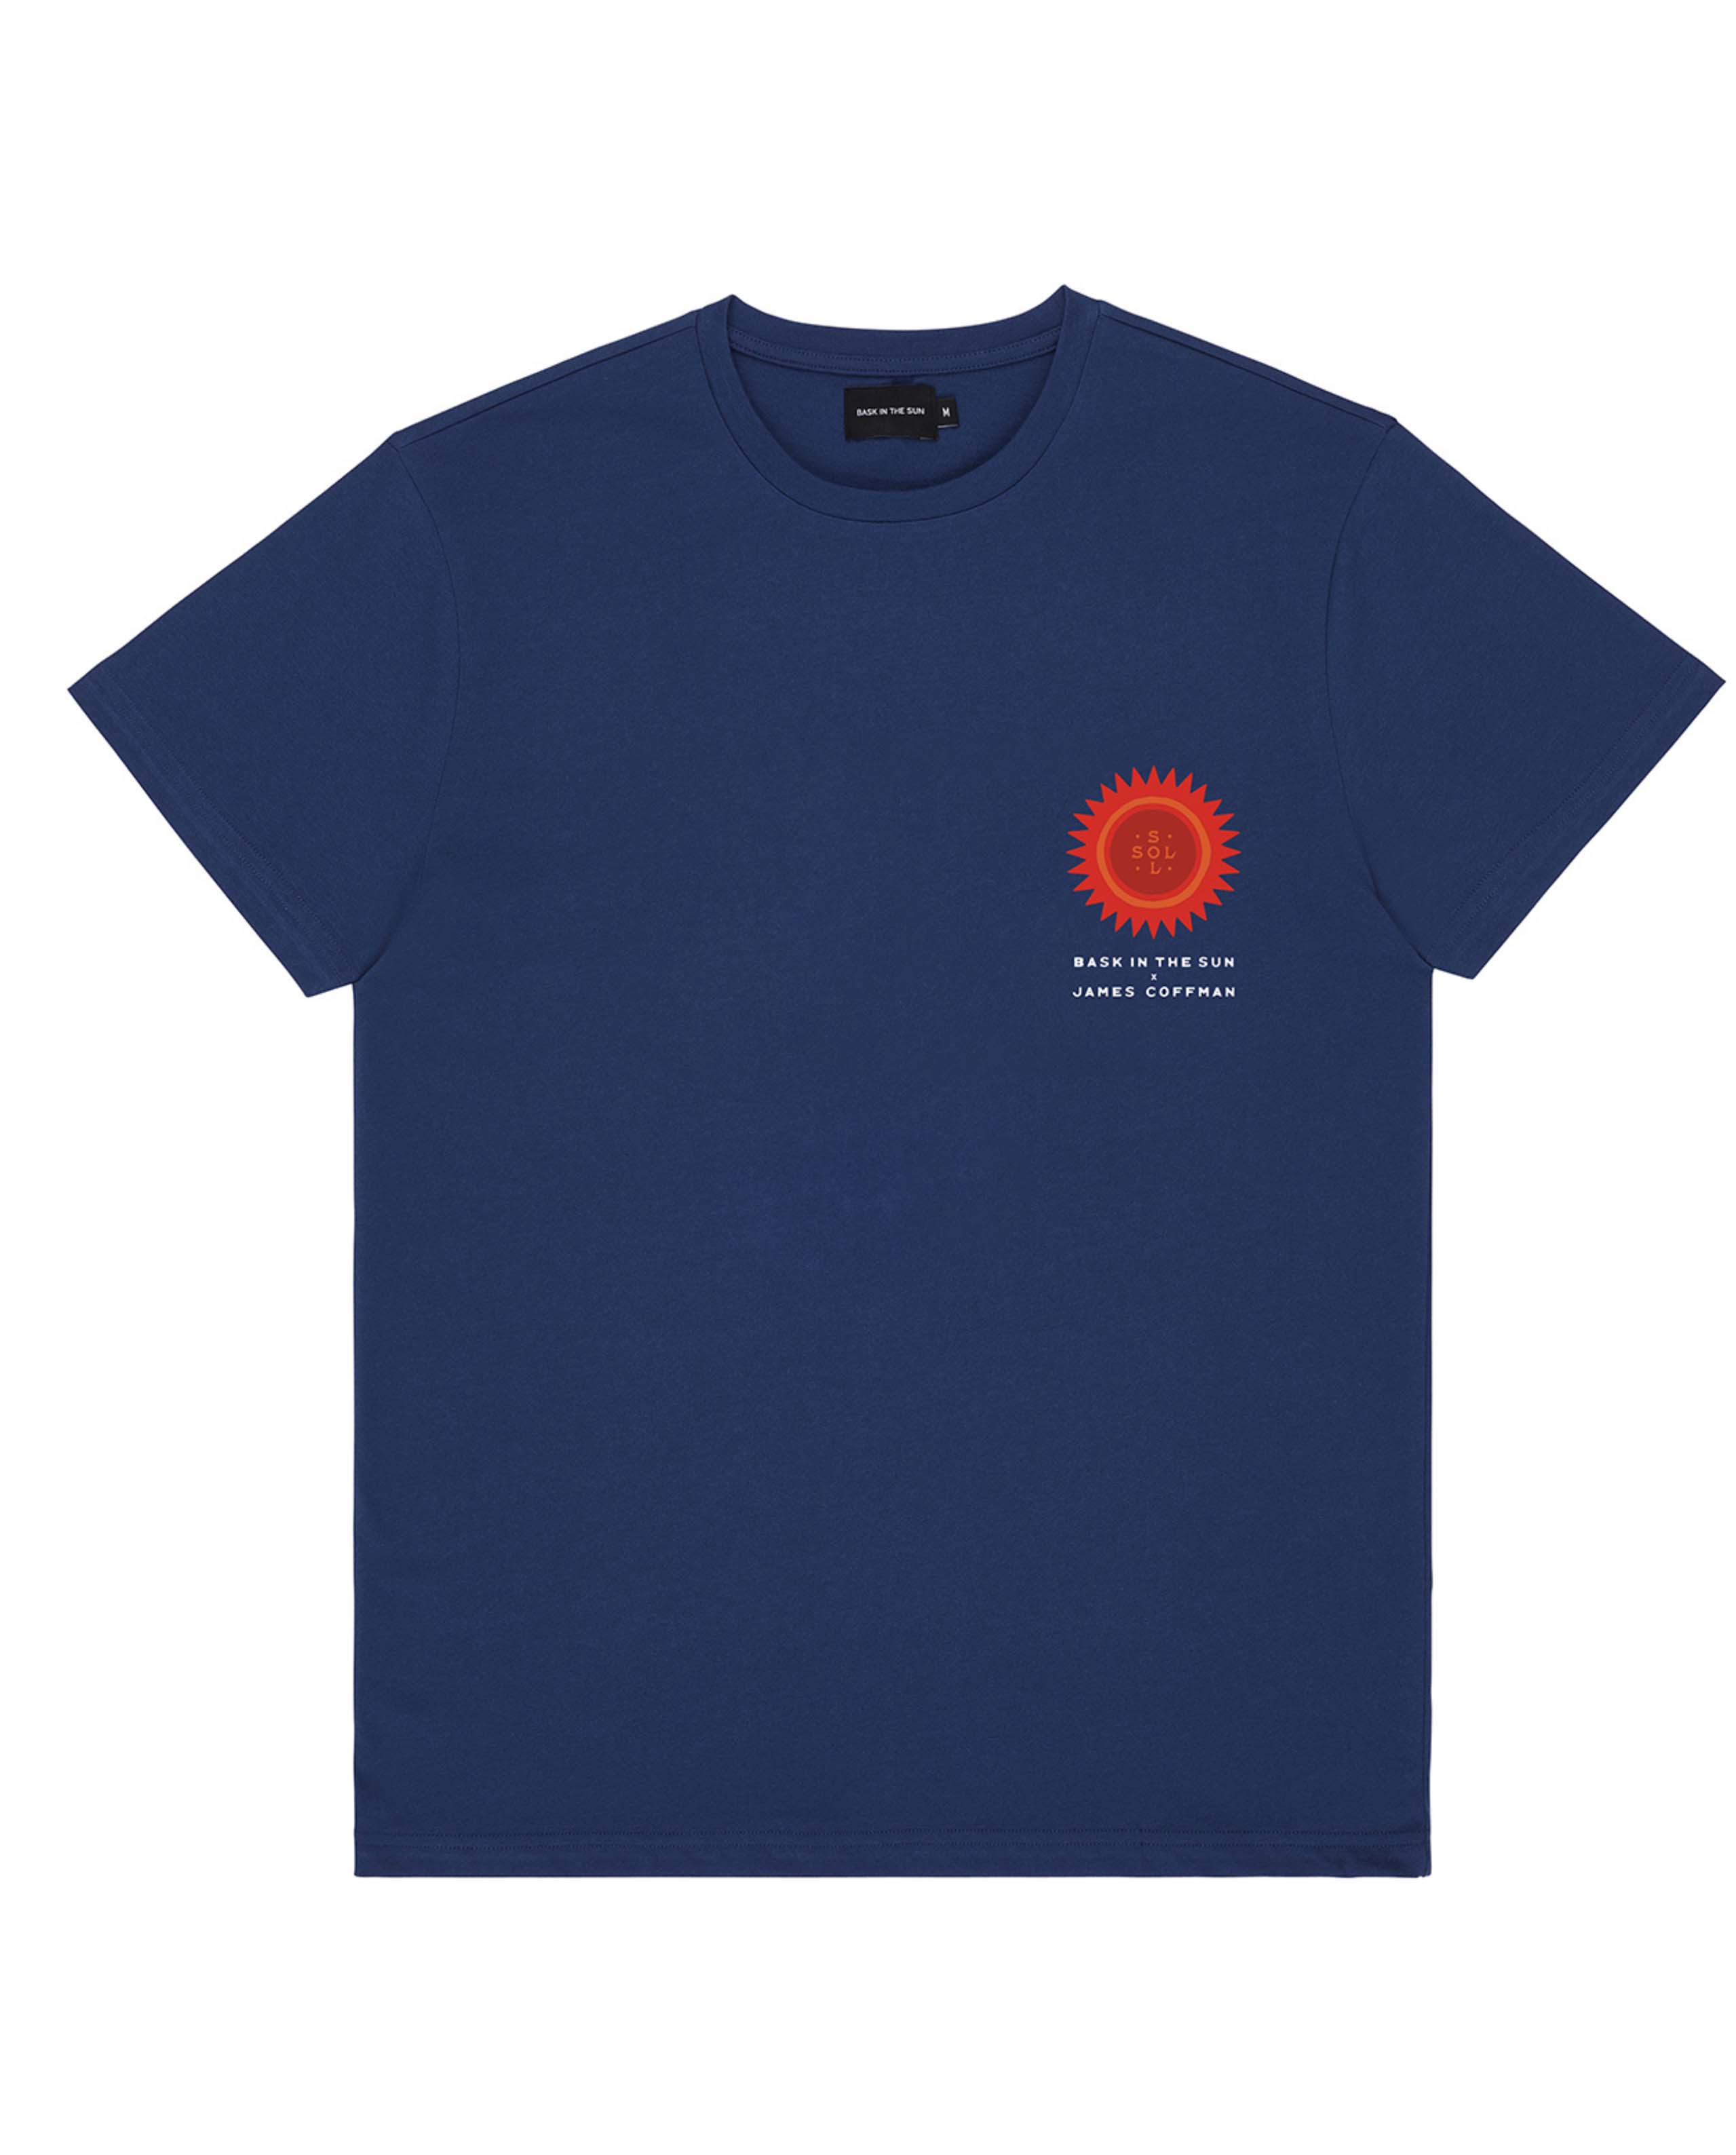 Marché Commun t-shirt en coton bio bleu marine imprimé rouge bask in the sun